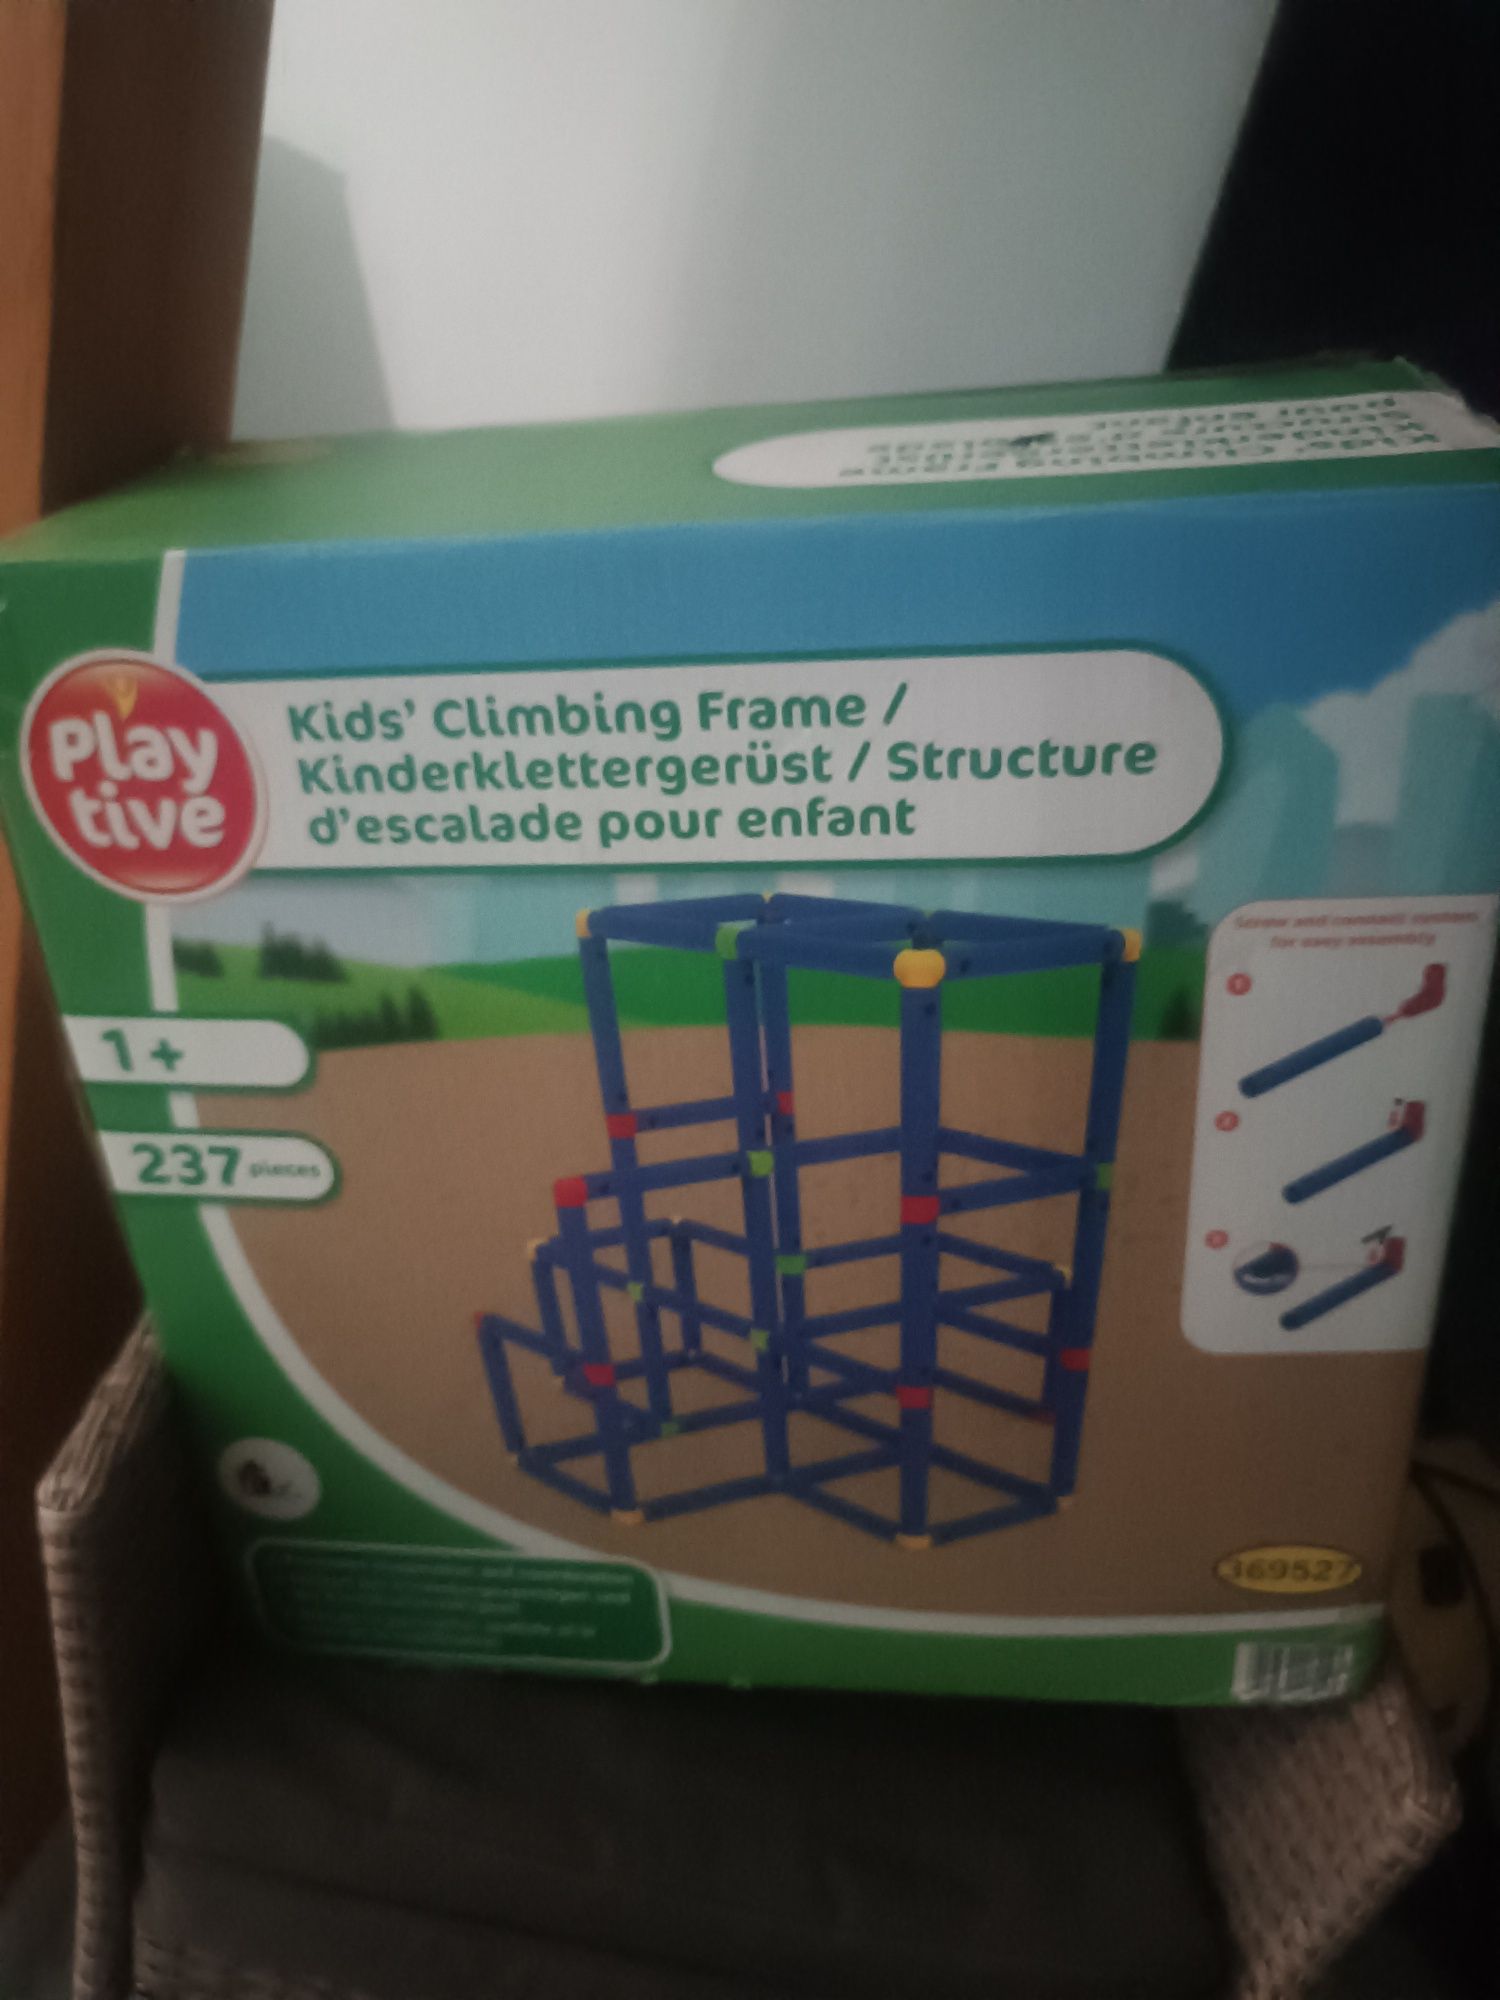 Konstrukcja do wspinania dla dzieci playtive